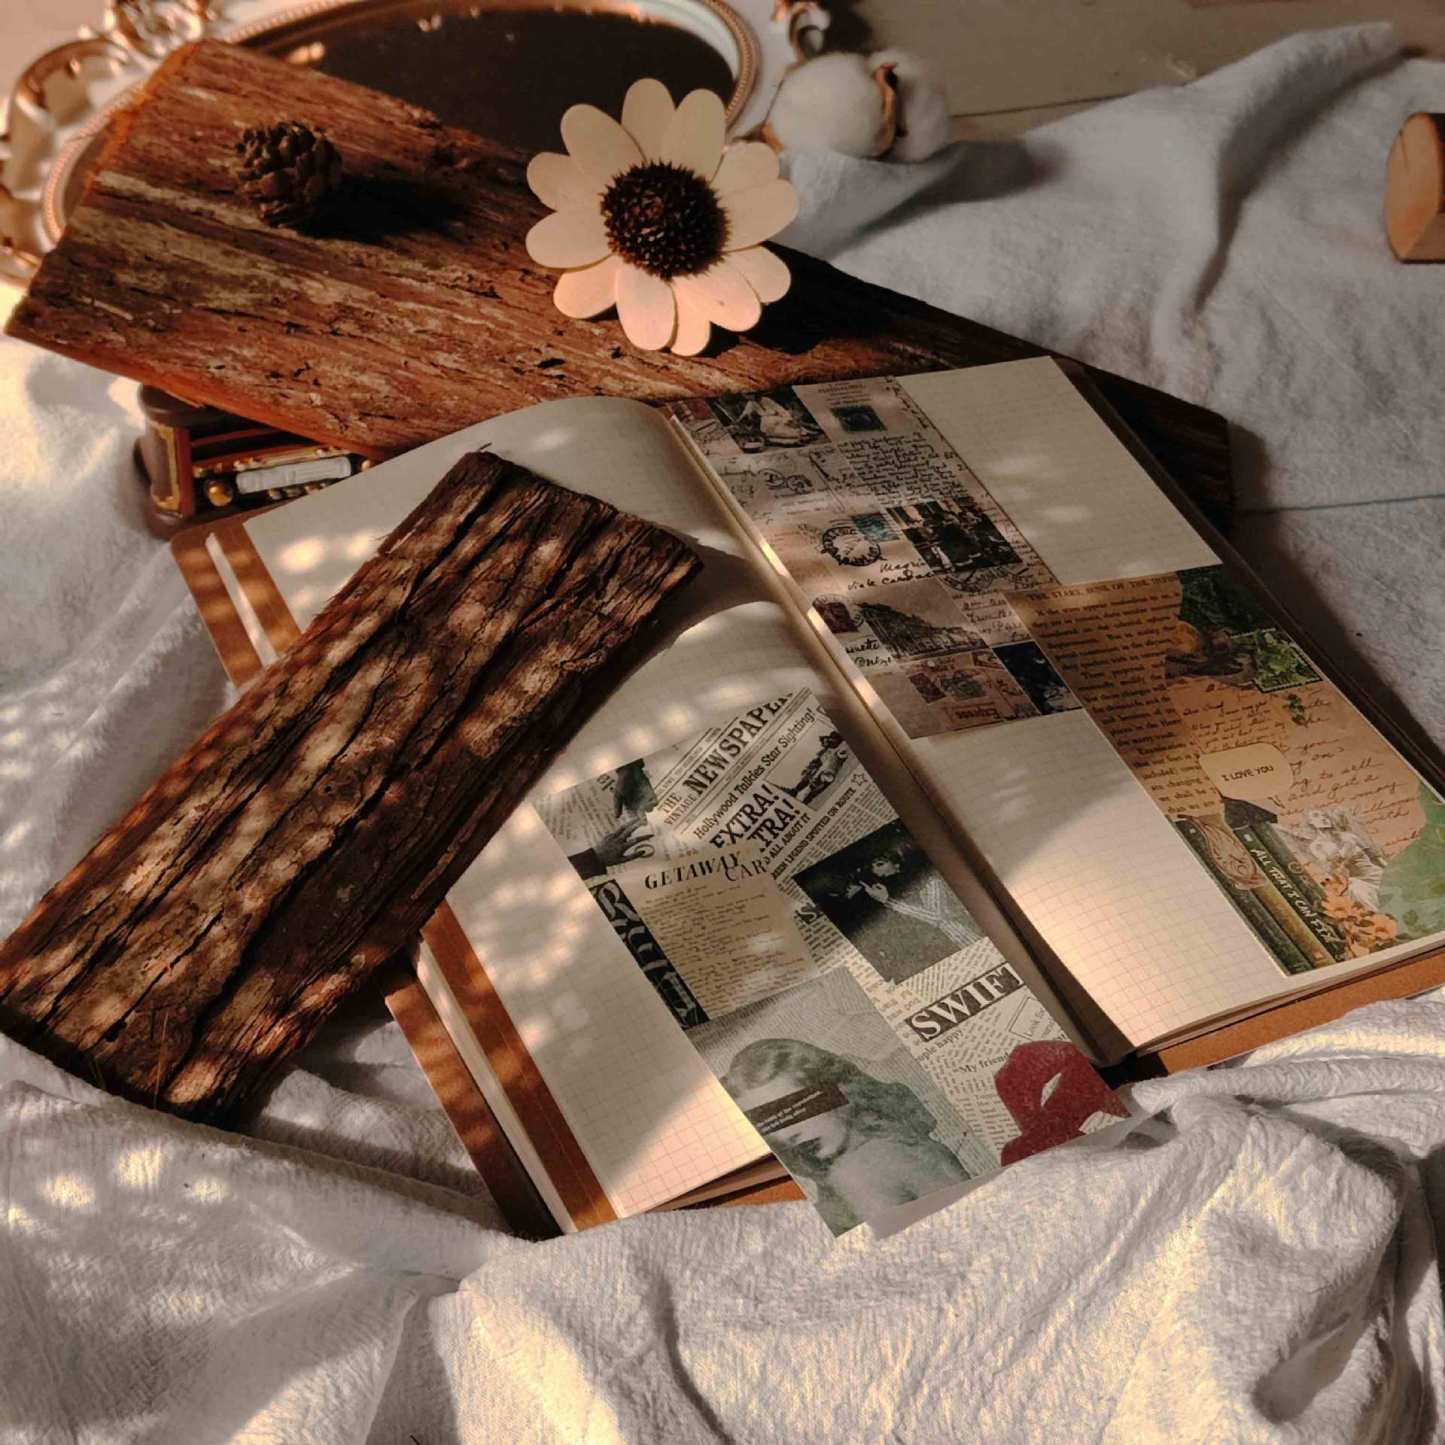 50 Pcs Decoration Material Paper Scrapbooking Album-JournalTale